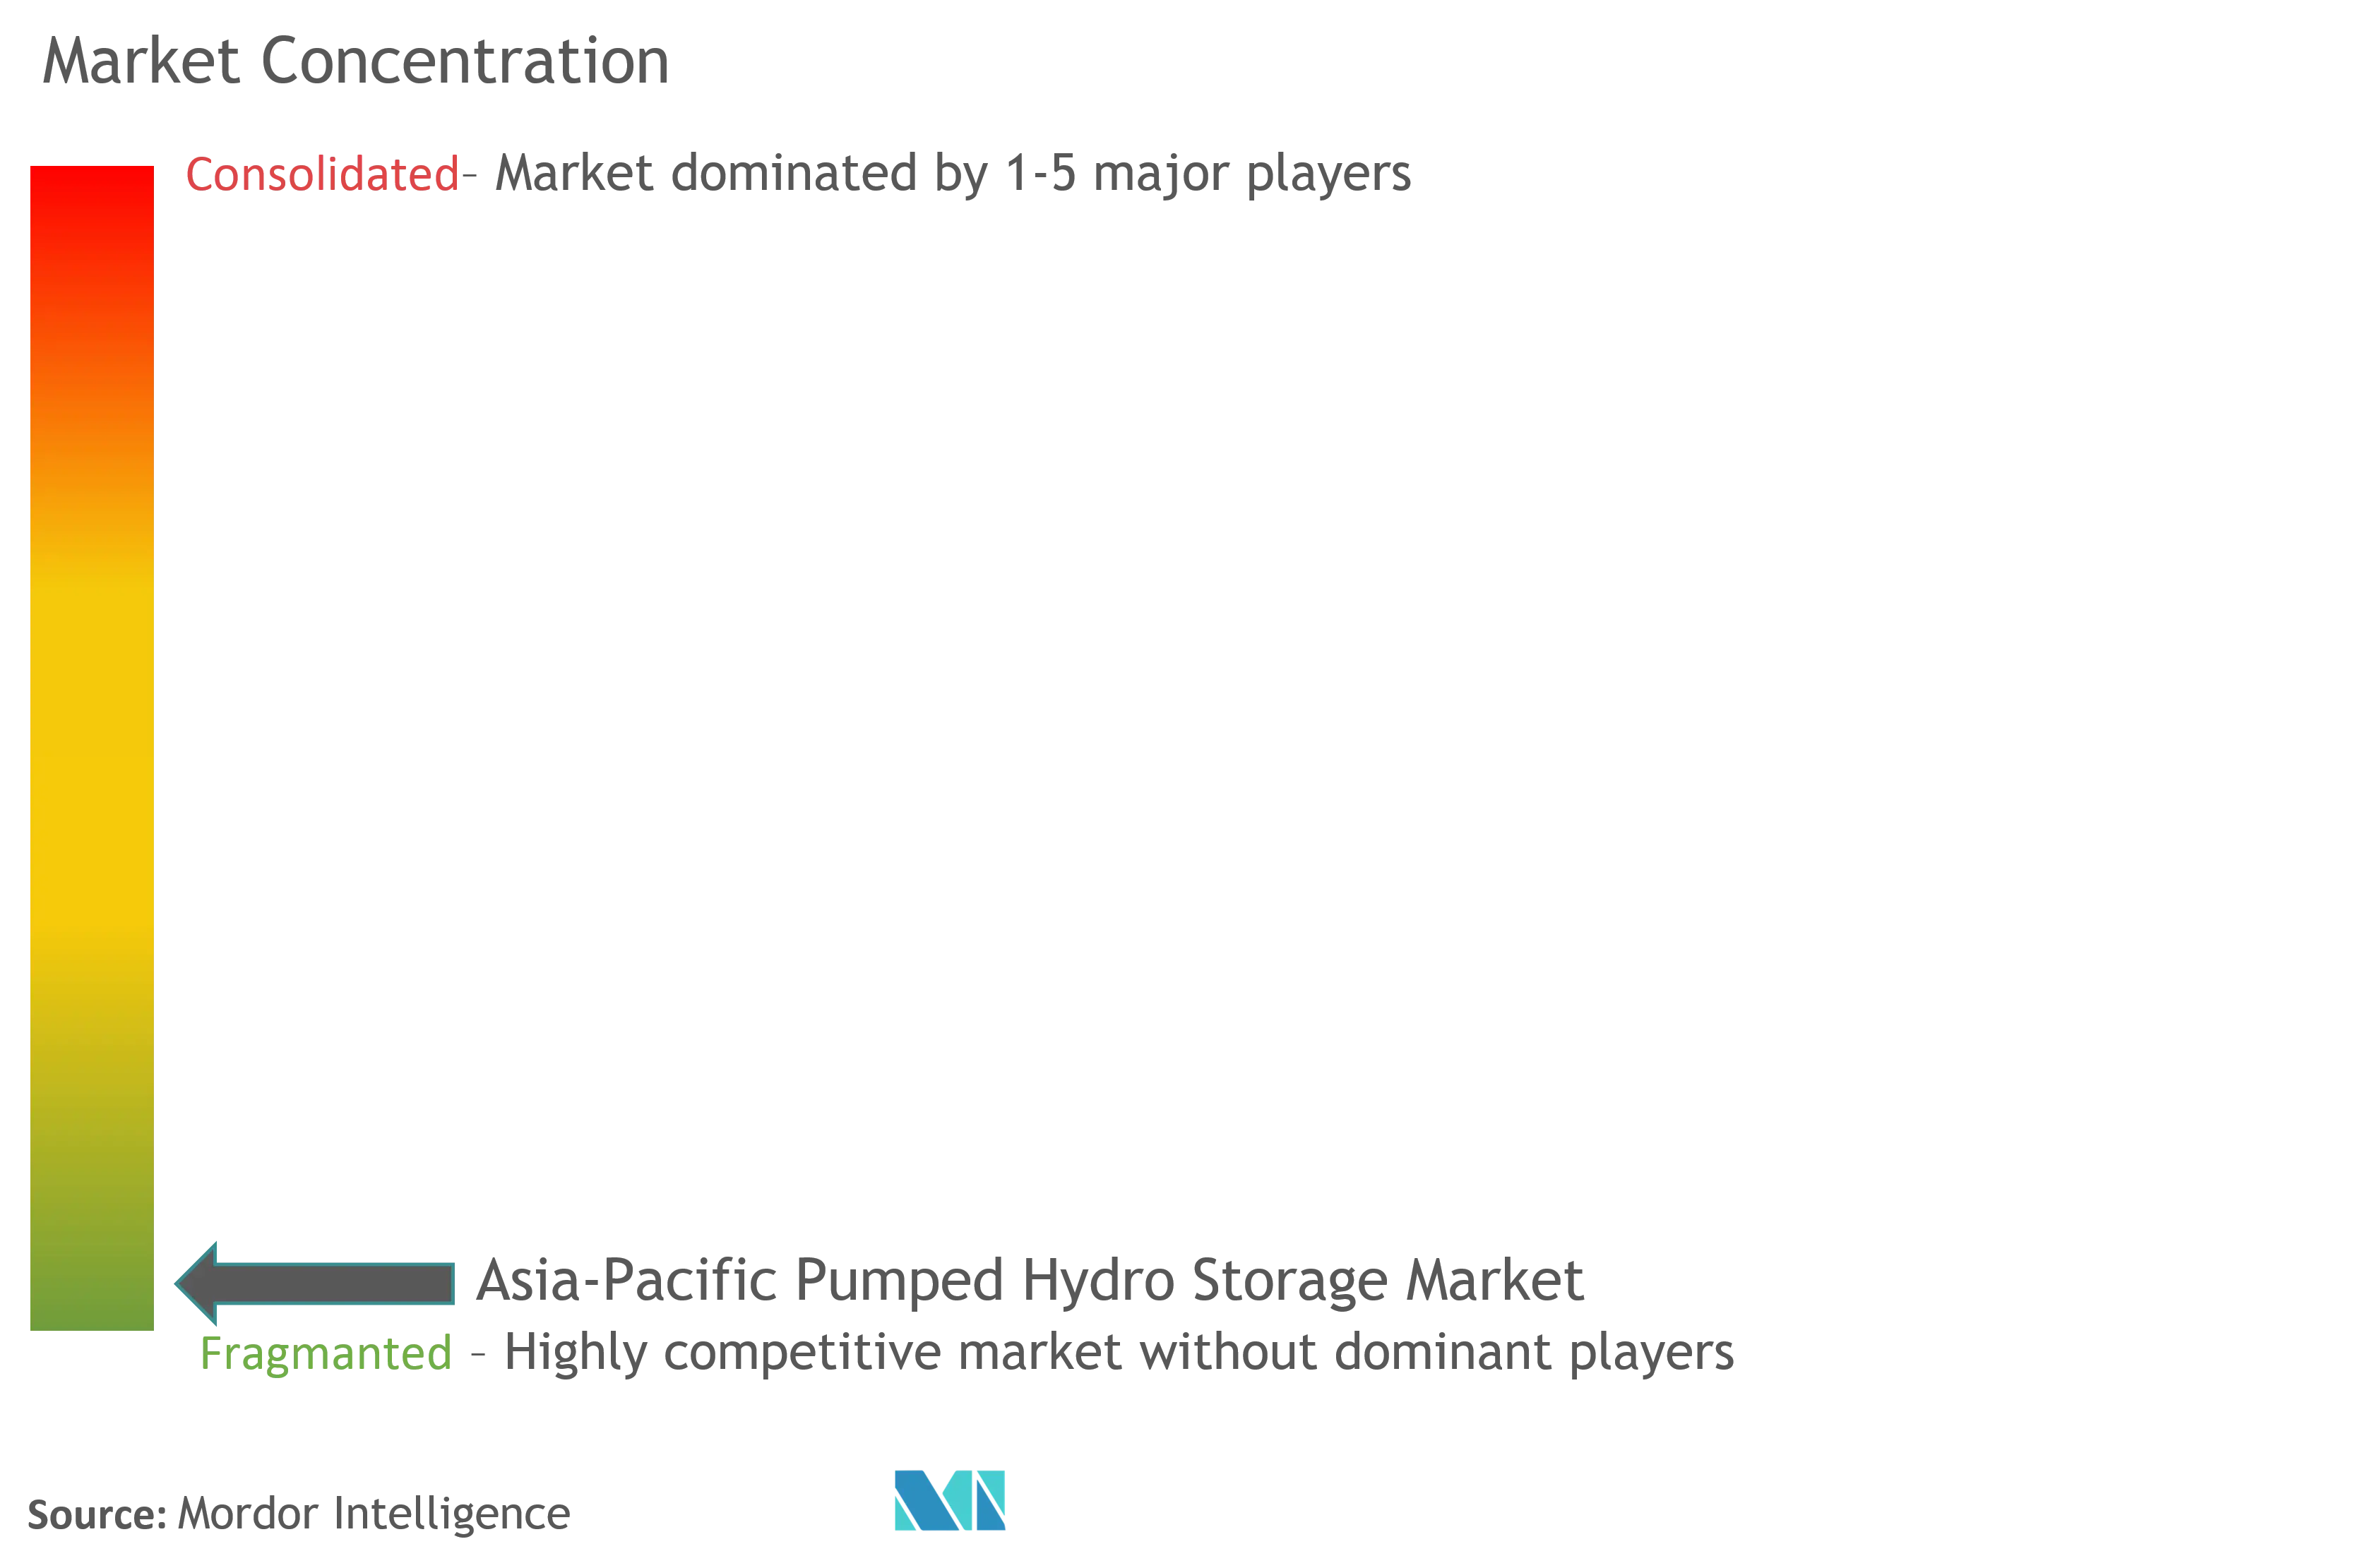 アジア太平洋揚水発電市場の集中度